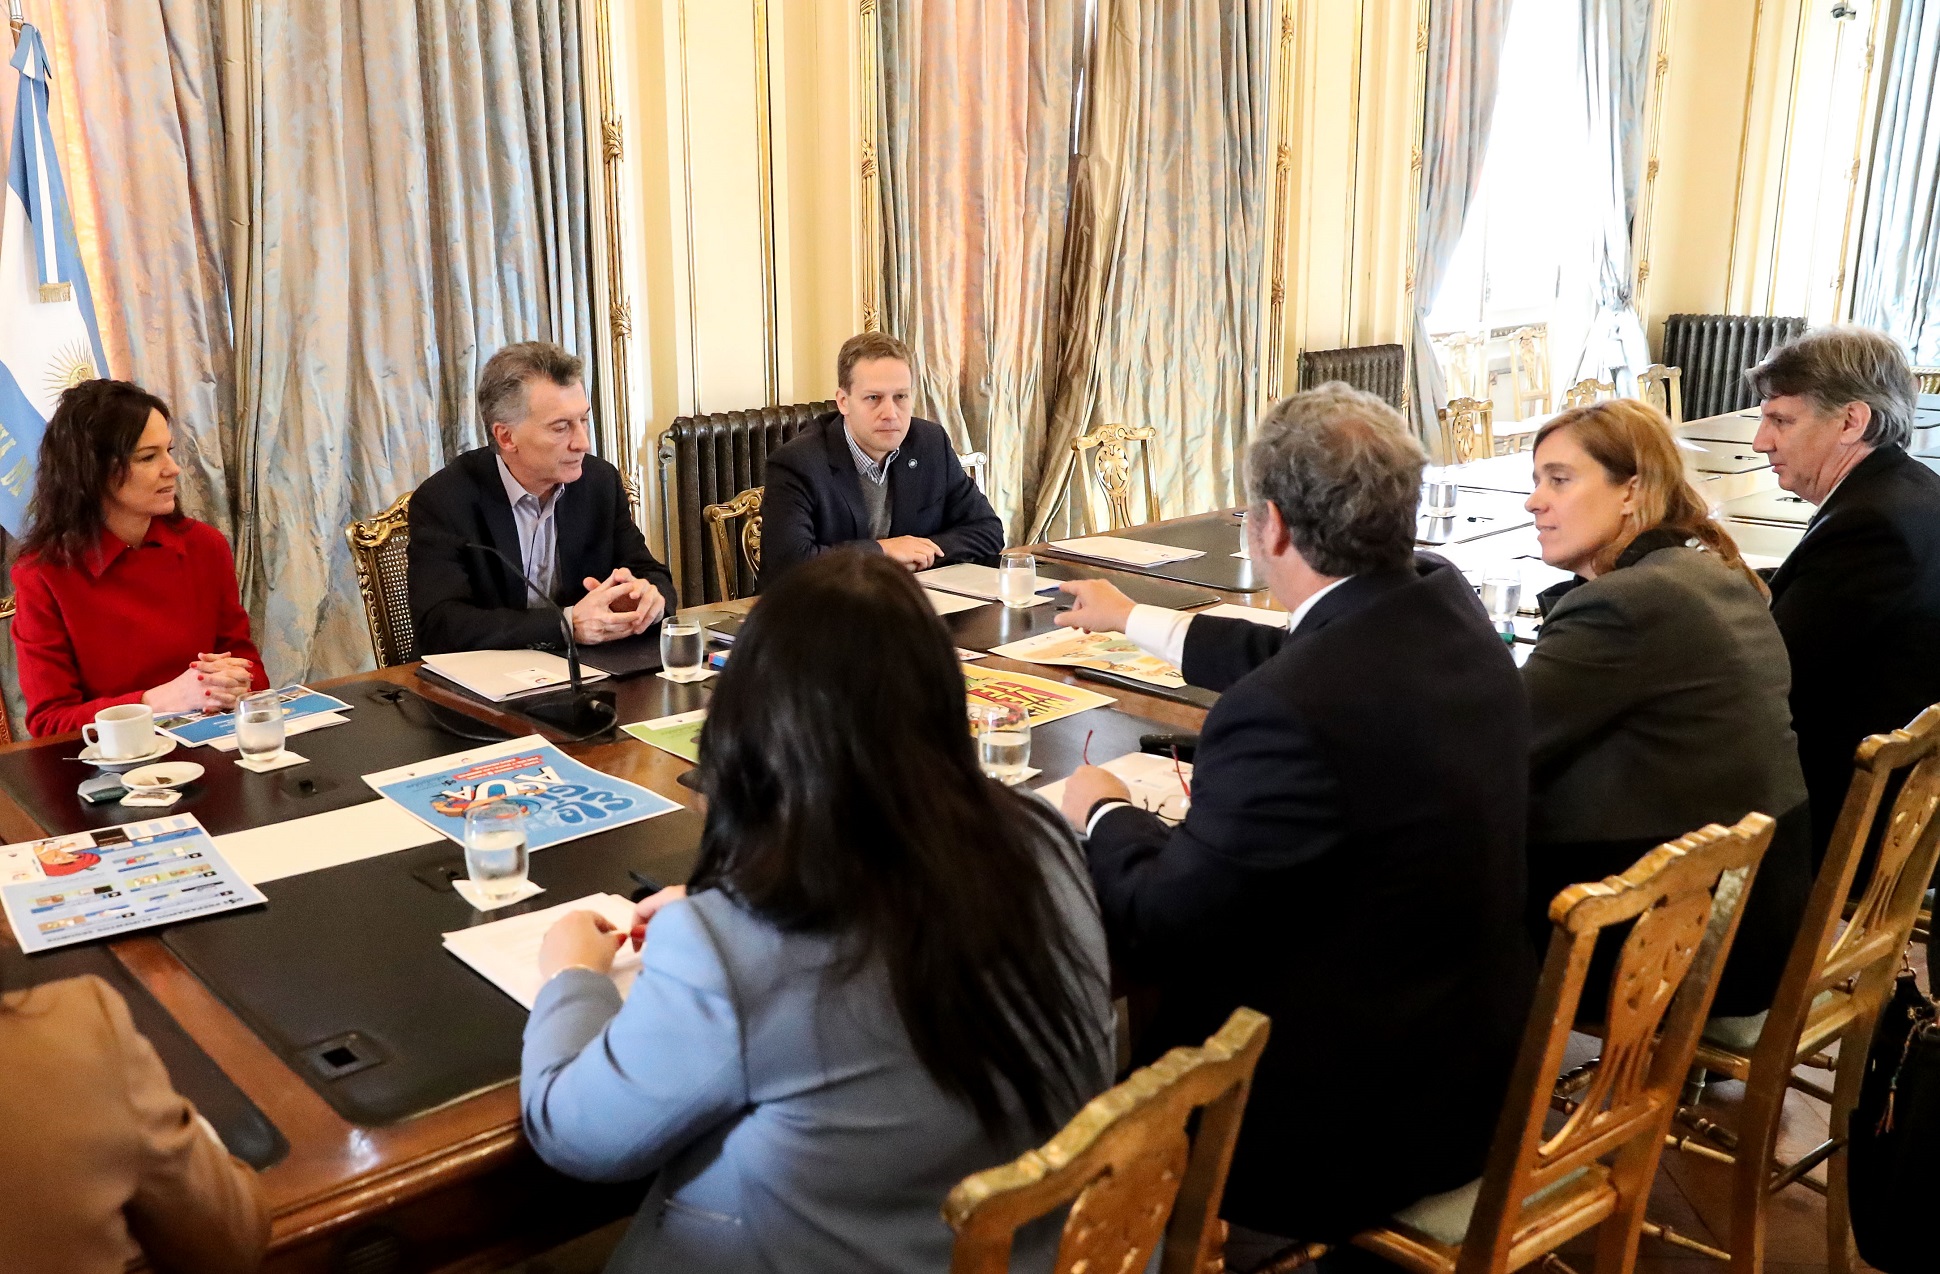 Macri encabezó una reunión de seguimiento de Alimentación Saludable